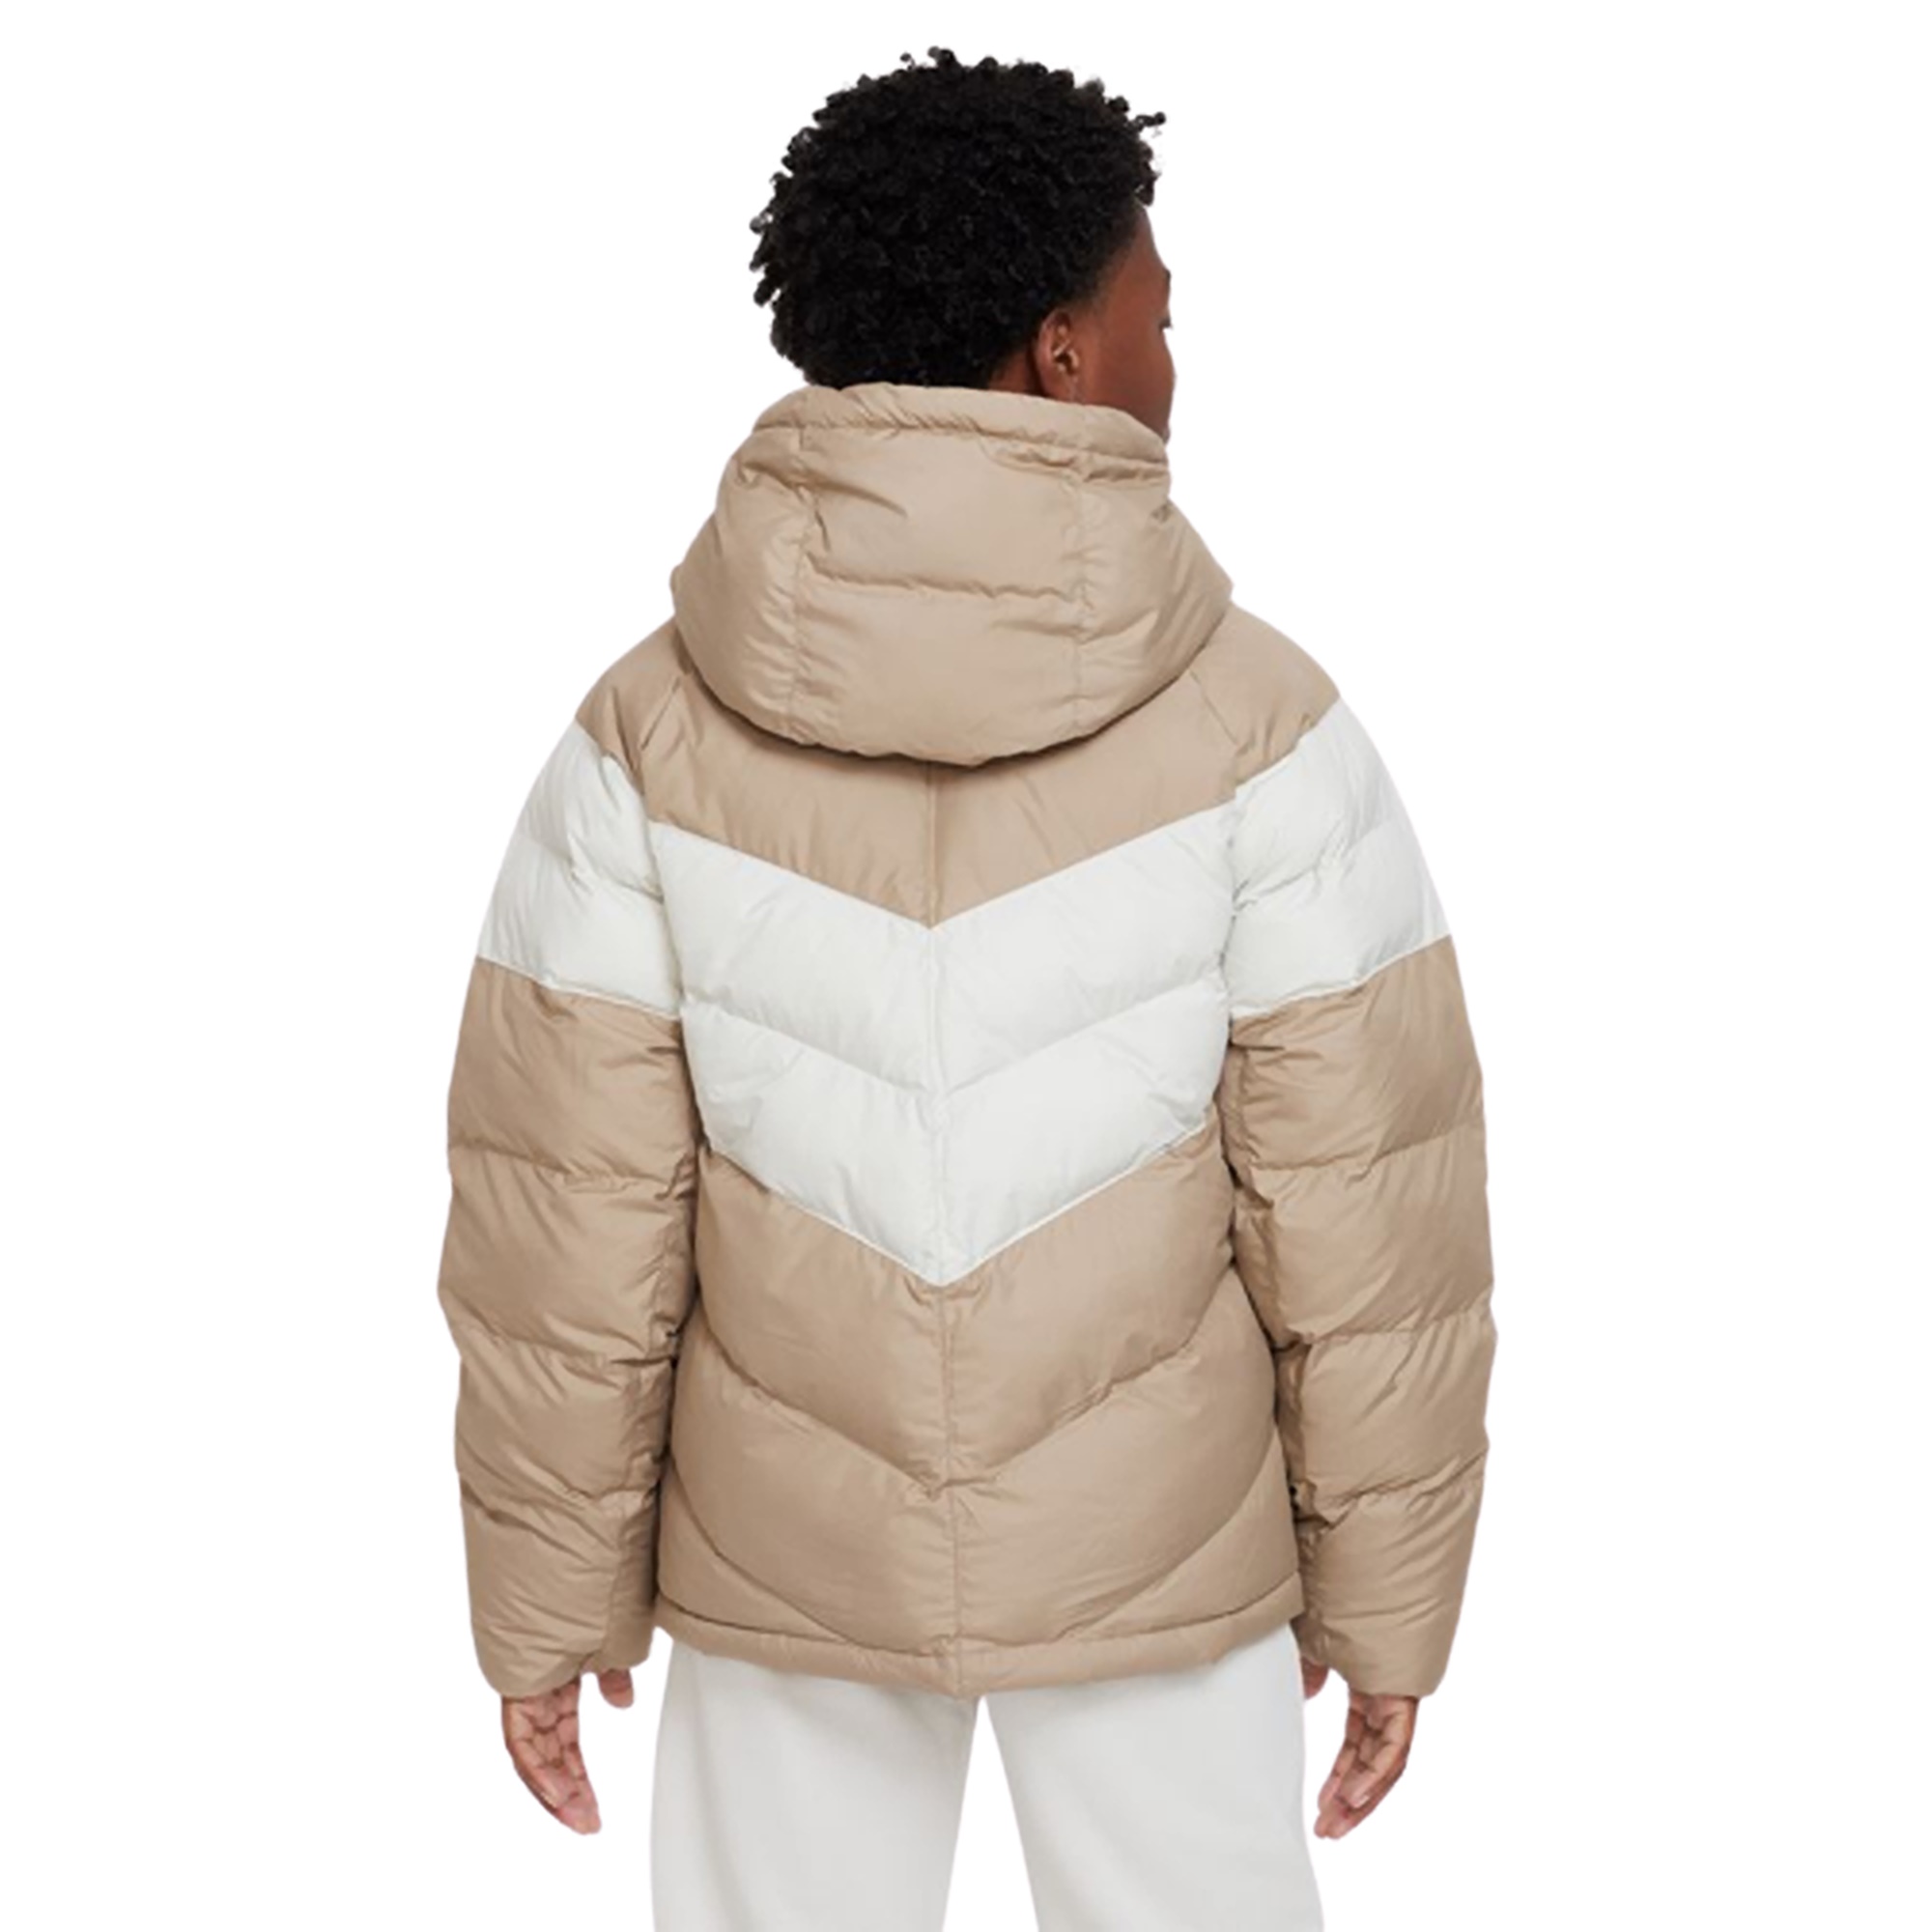 Negar frijoles Oficial Nike Sportswear Big Kids' Synthetic-Fill Hooded Jacket